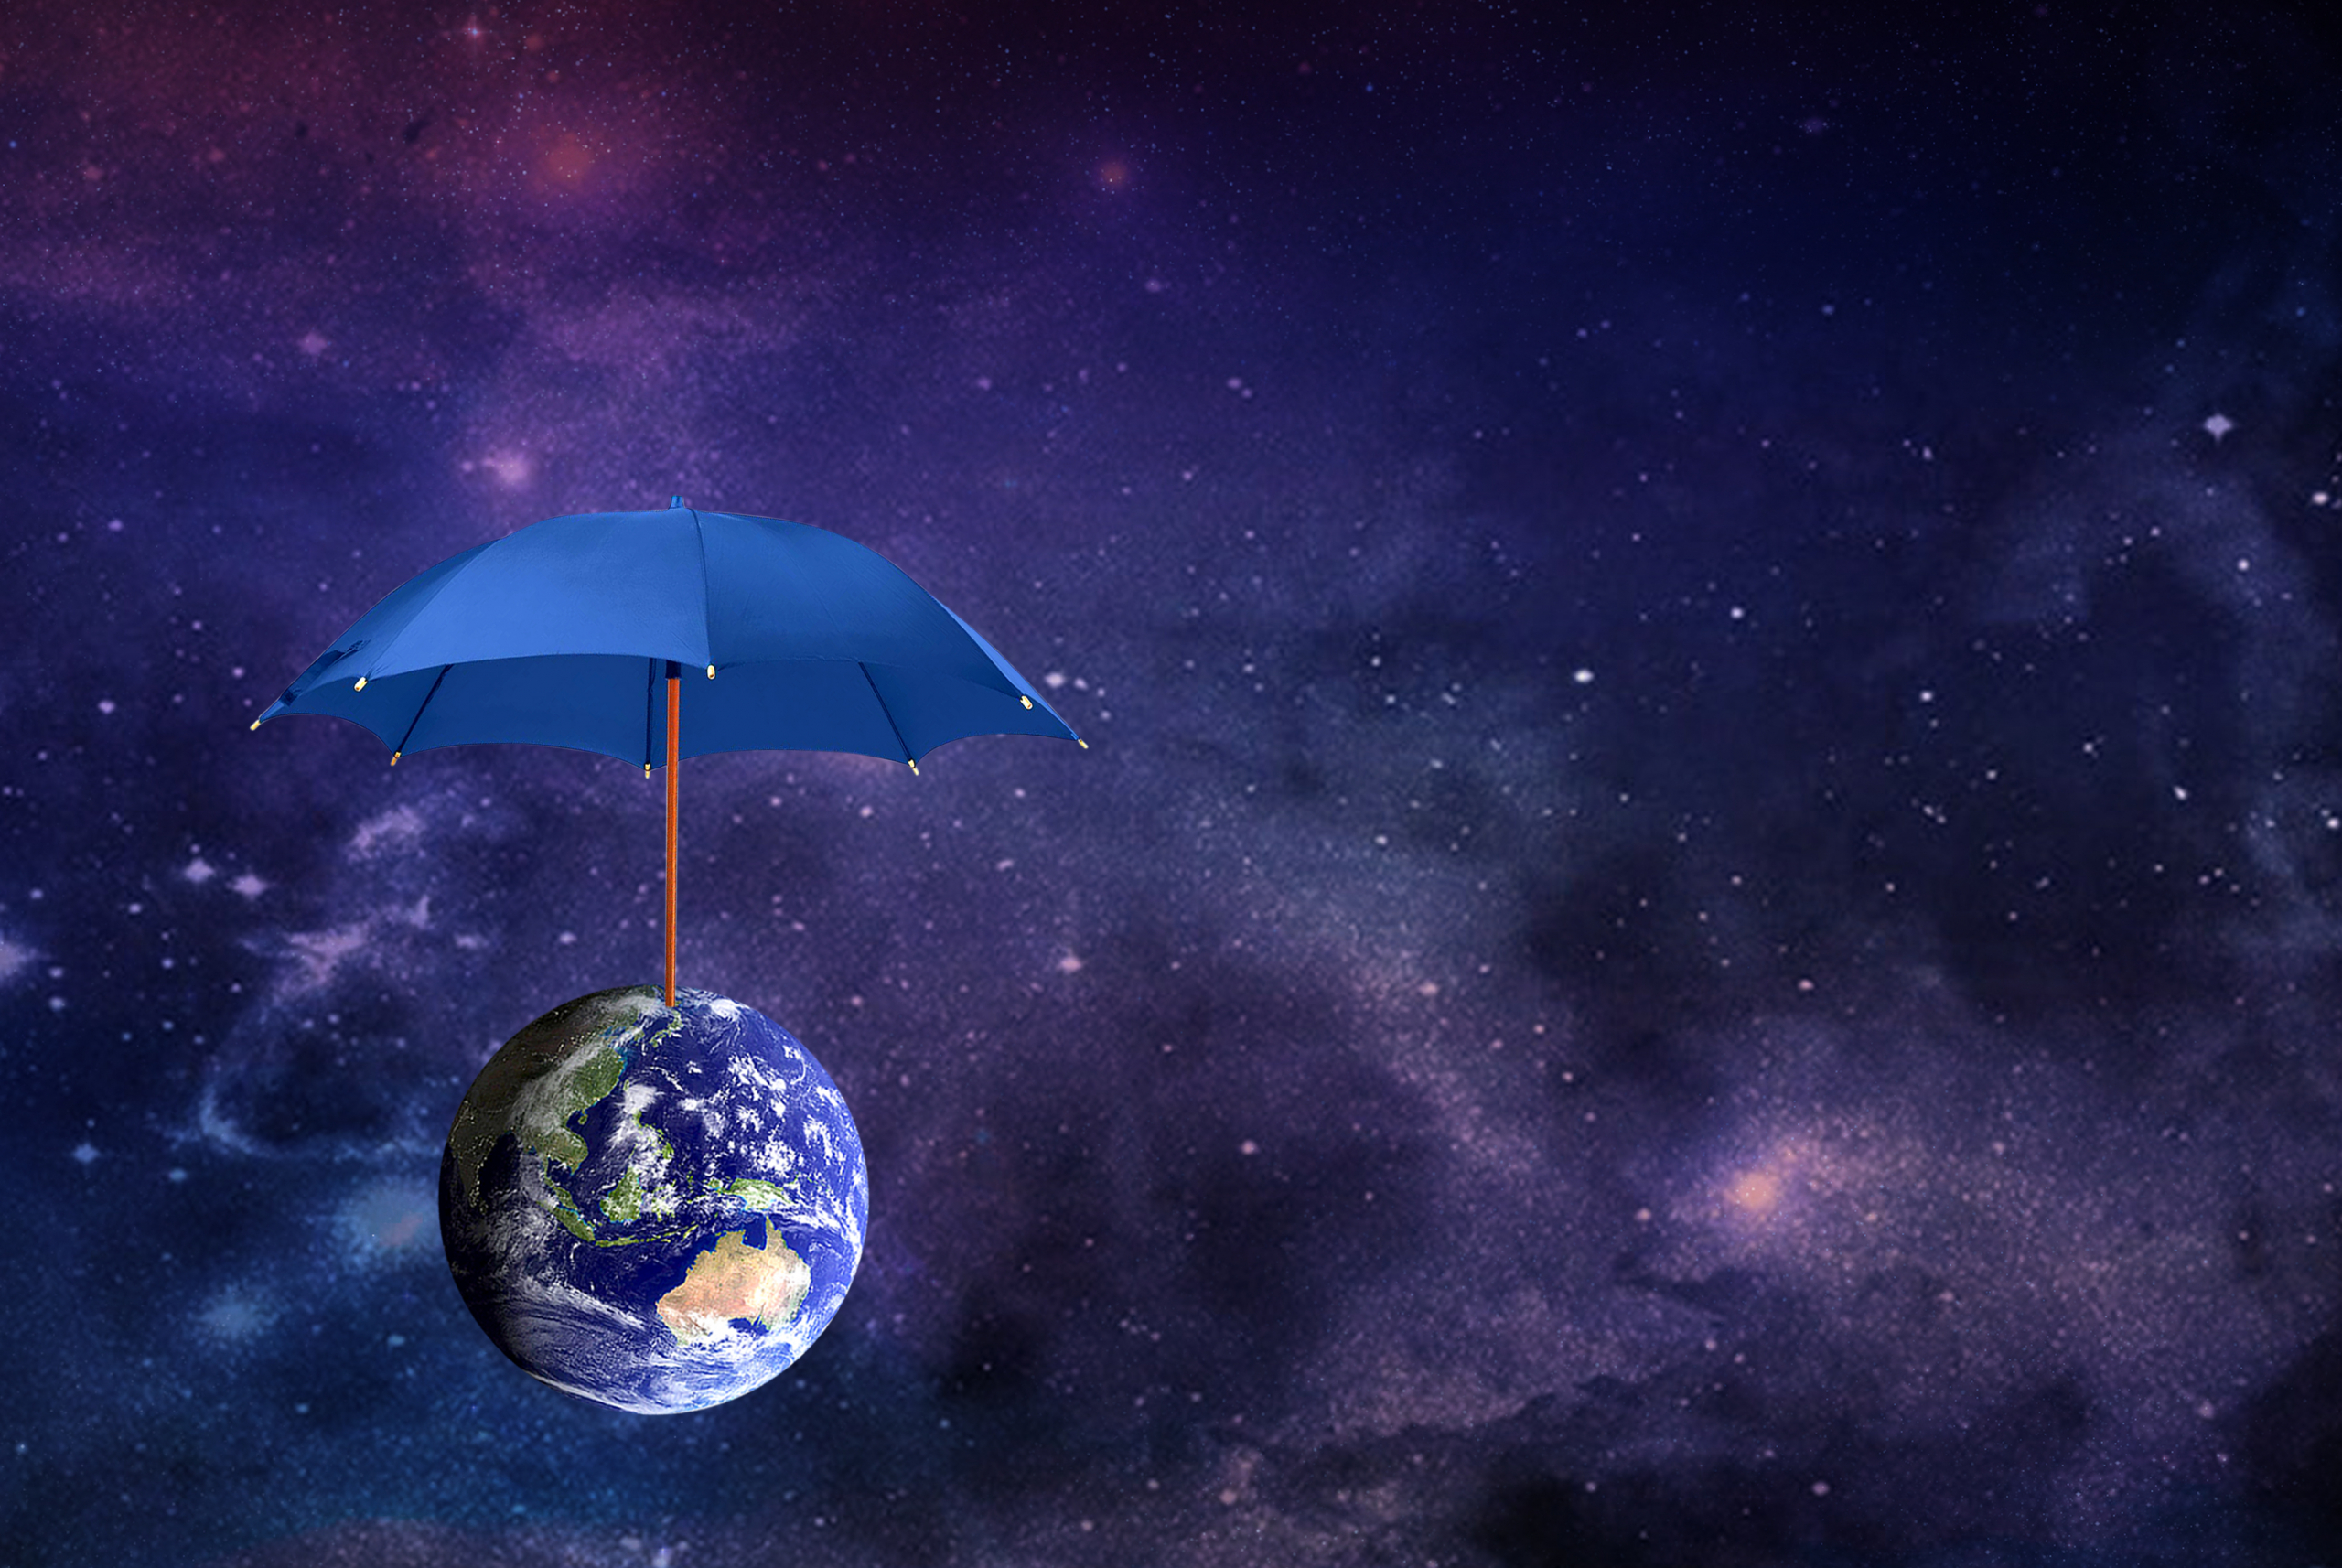 Da li bi džinovski "kišobran" mogao pomoći u zaustavljanju klimatskih promena i da li je to dobra ideja?